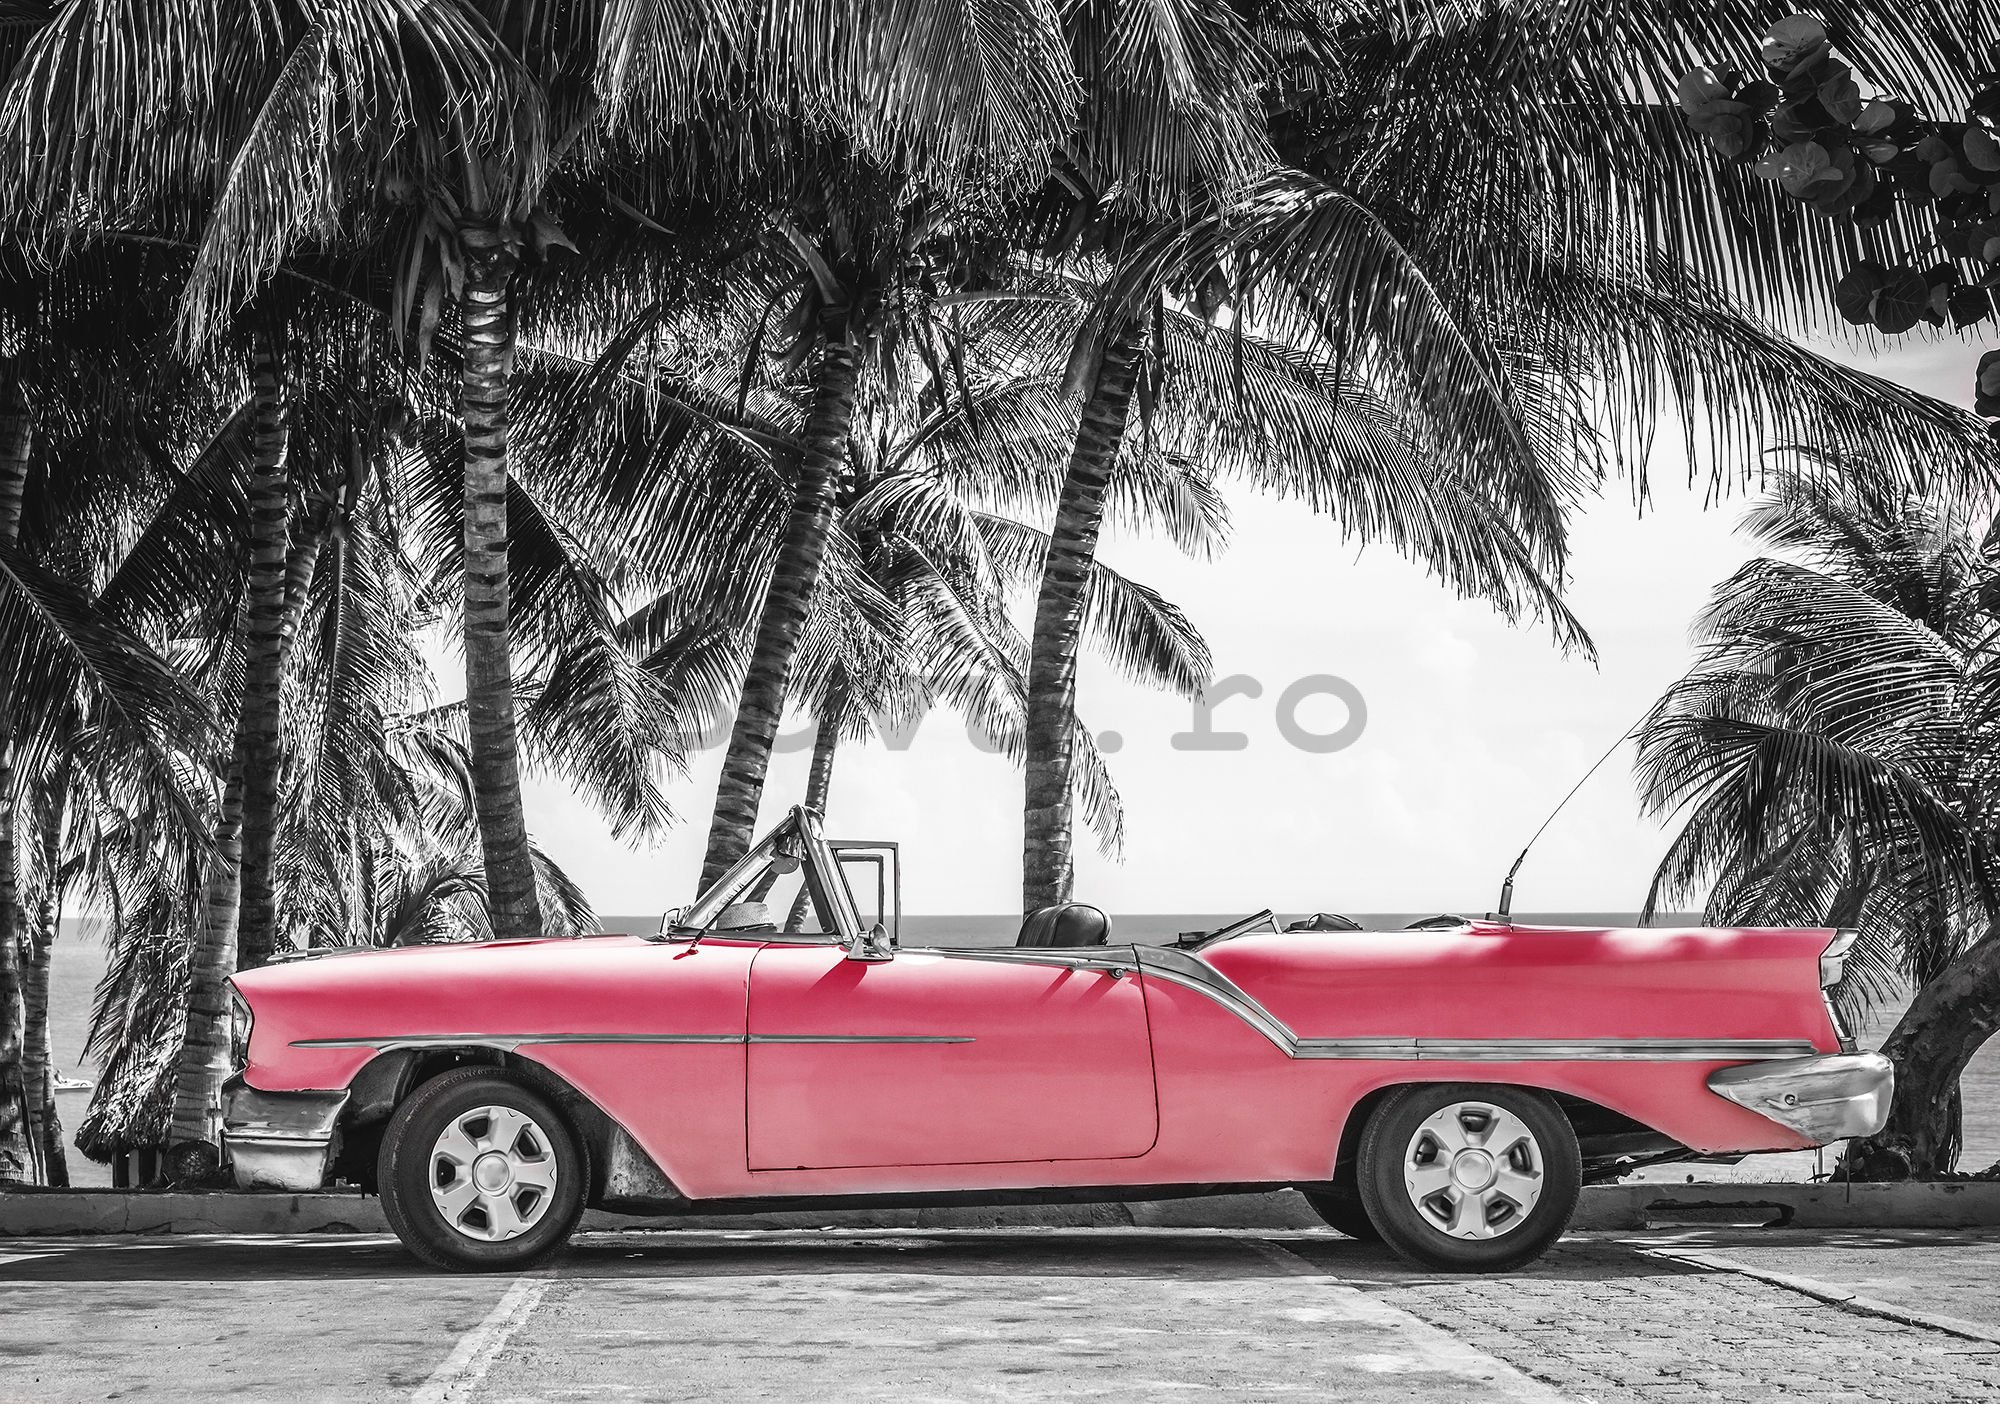 Fototapet vlies: Masina rosie Cuba - 184x254 cm